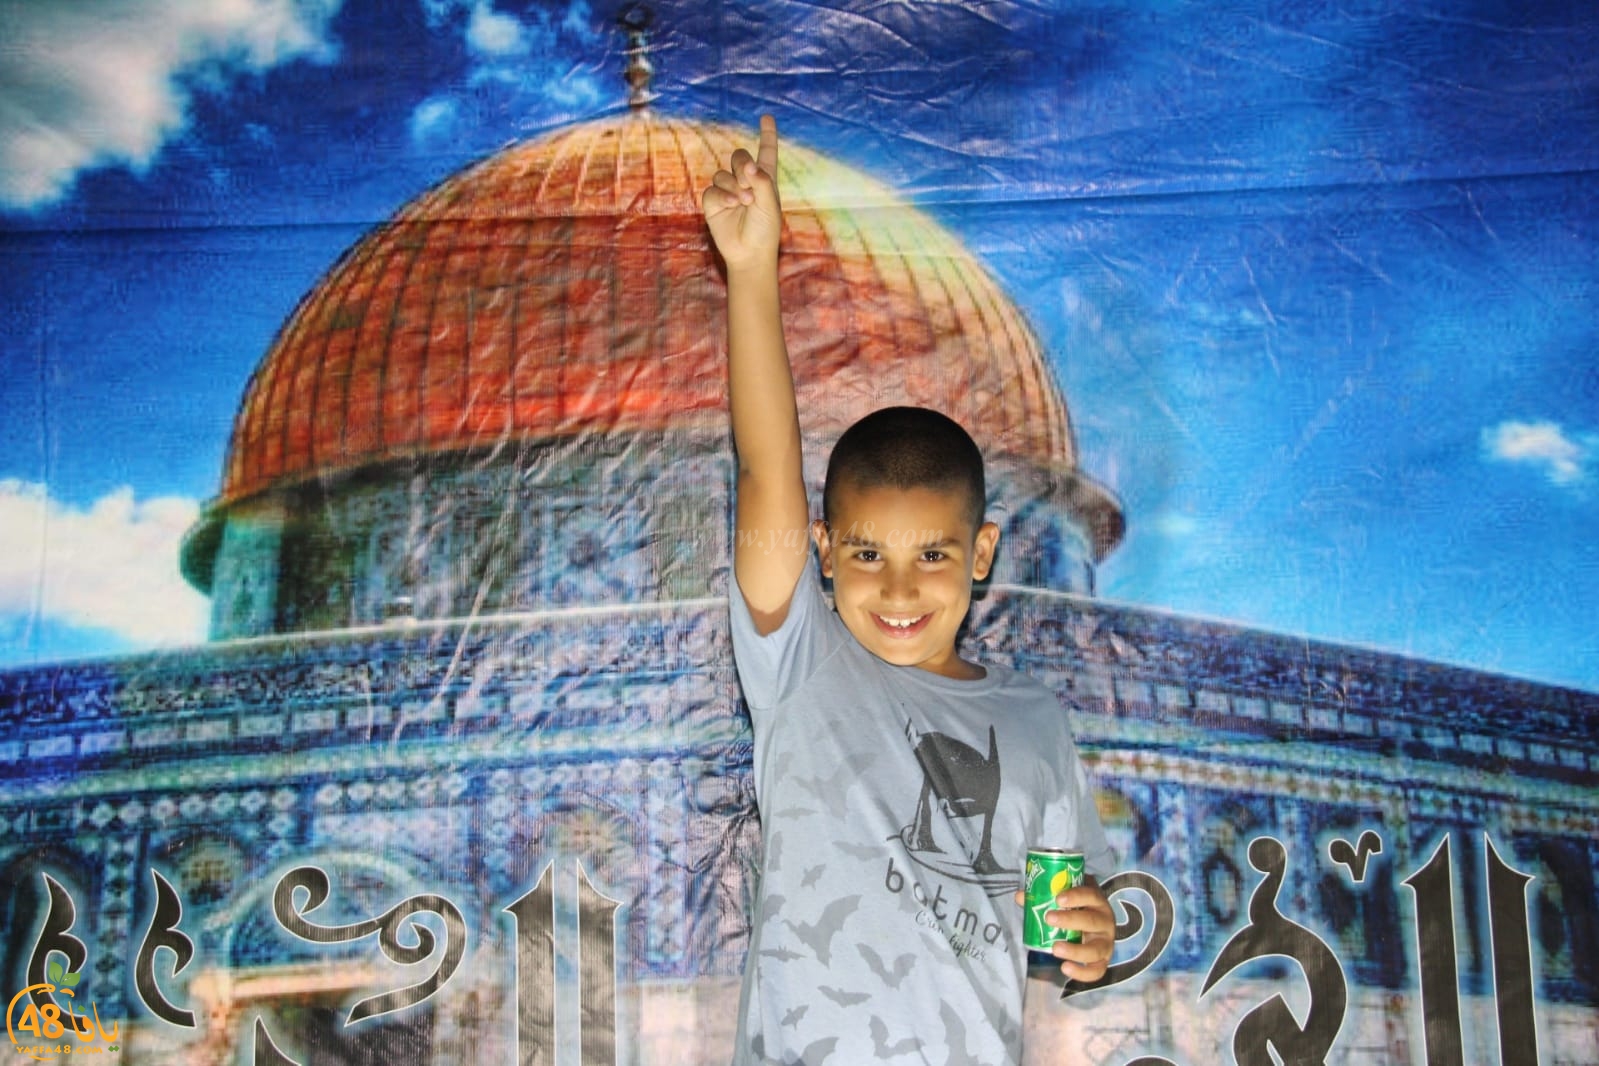 بالصور: خيمة الهدى الدعوية بيافا تستضيف الشيخ عبد الله عيّاش من شفاعمرو